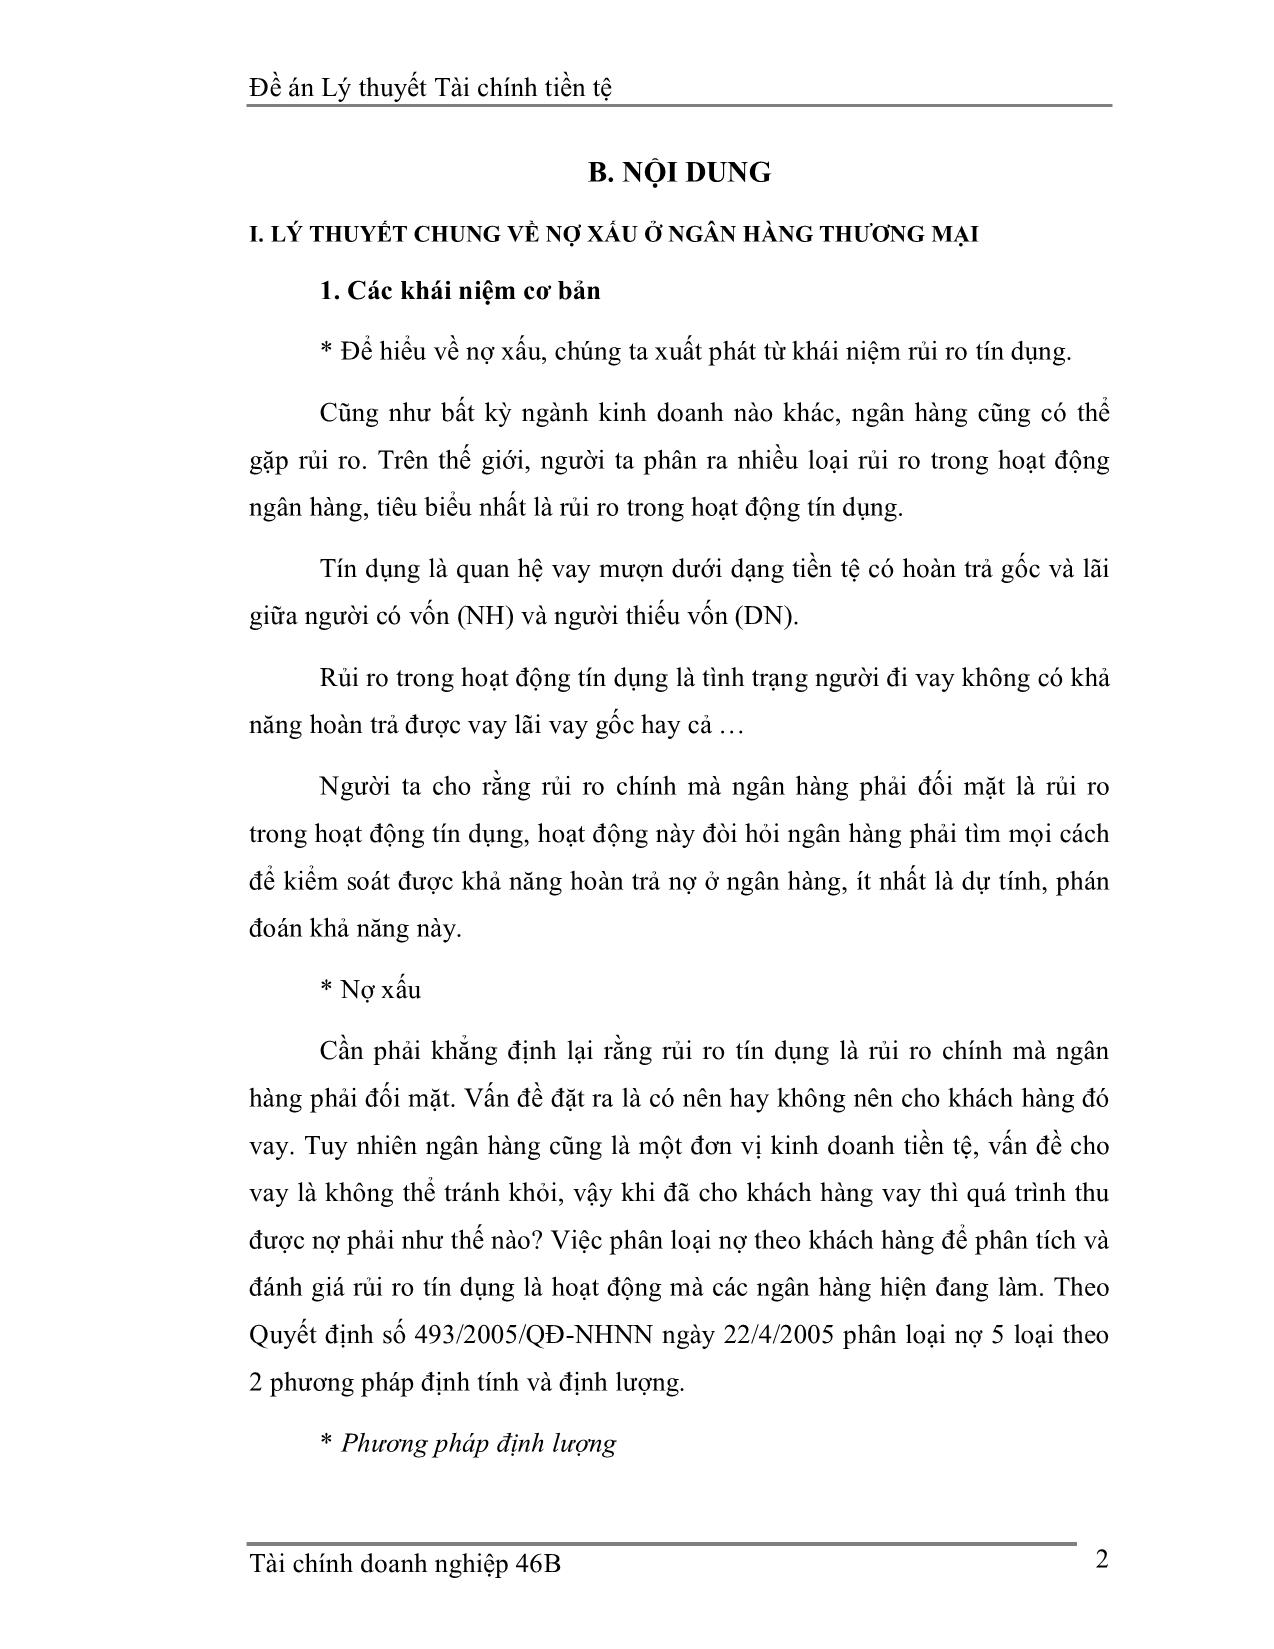 Đề án Xử lý nợ xấu trong hệ thống ngân hàng thương mại Việt Nam trang 3